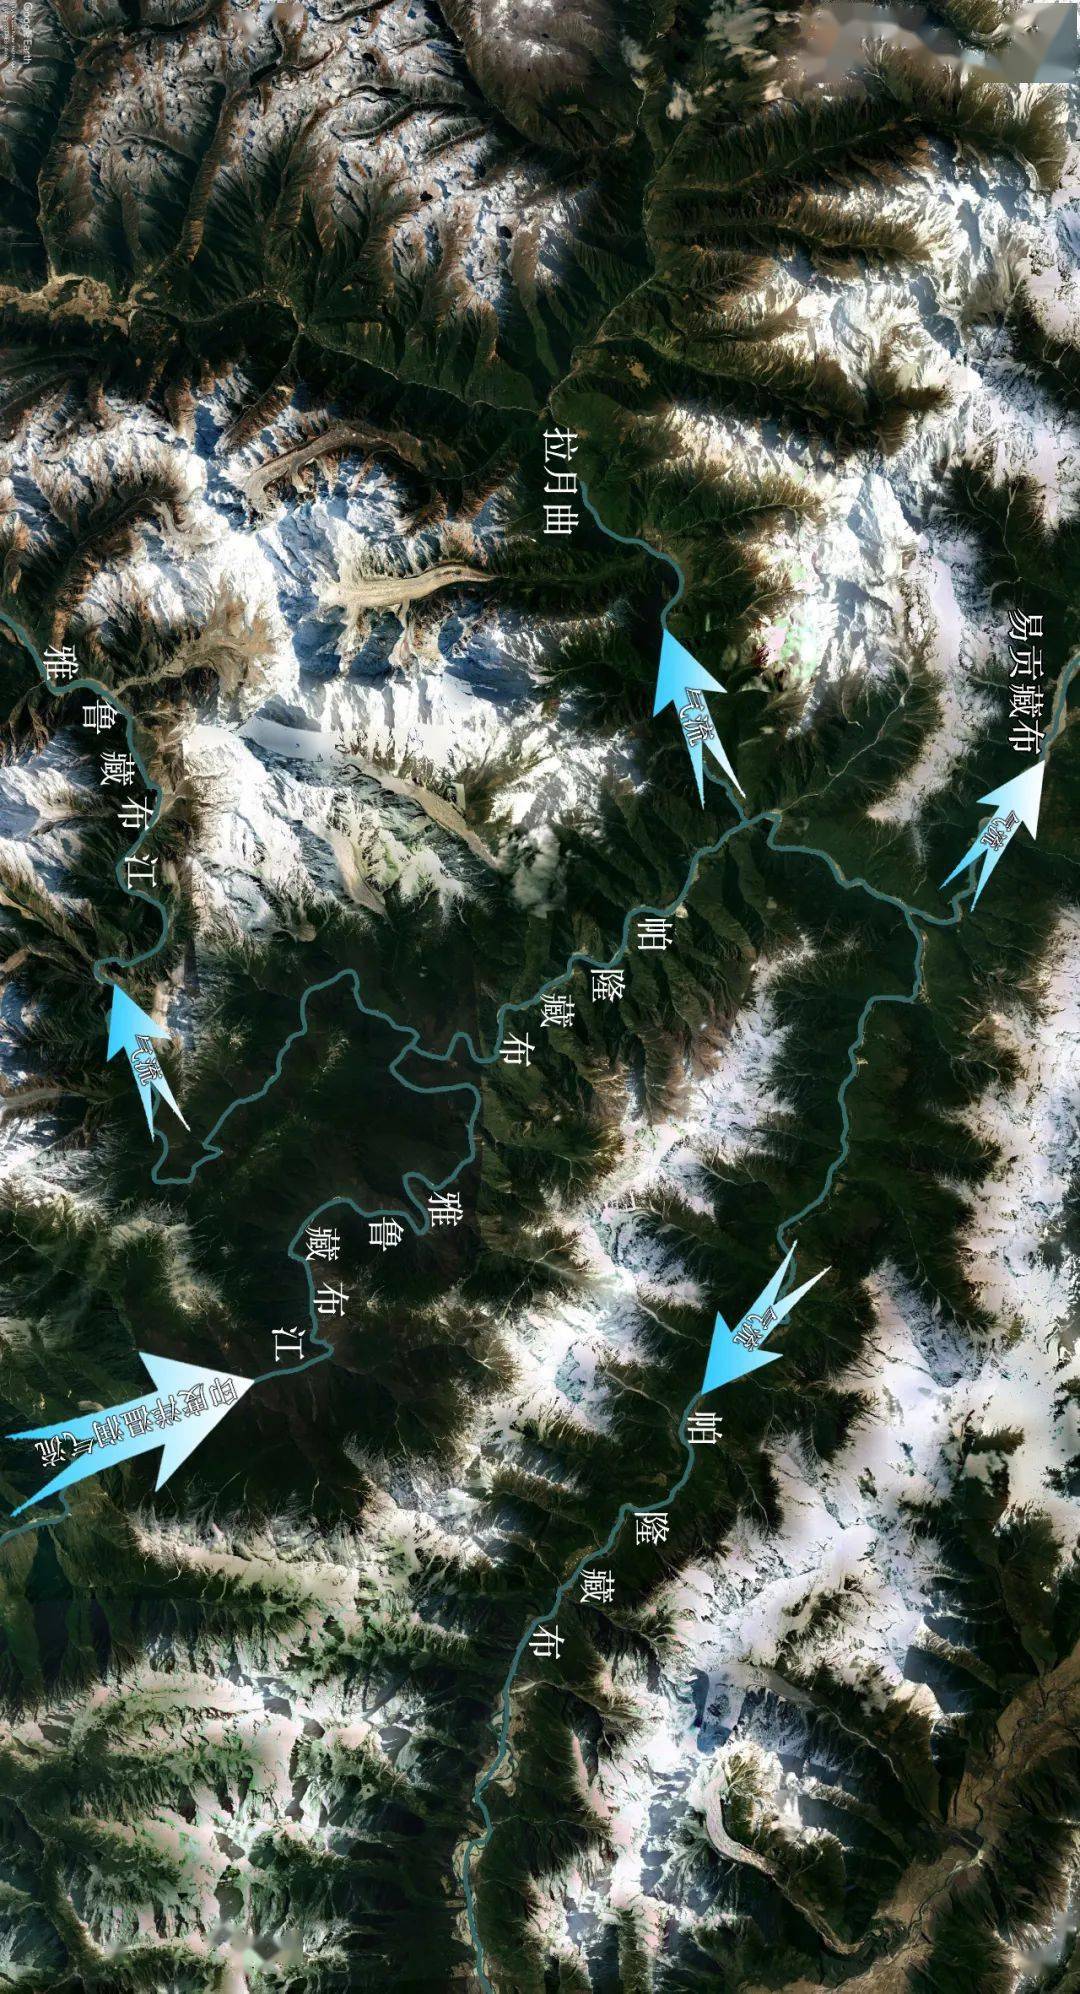 雅鲁藏布大峡谷位置图片